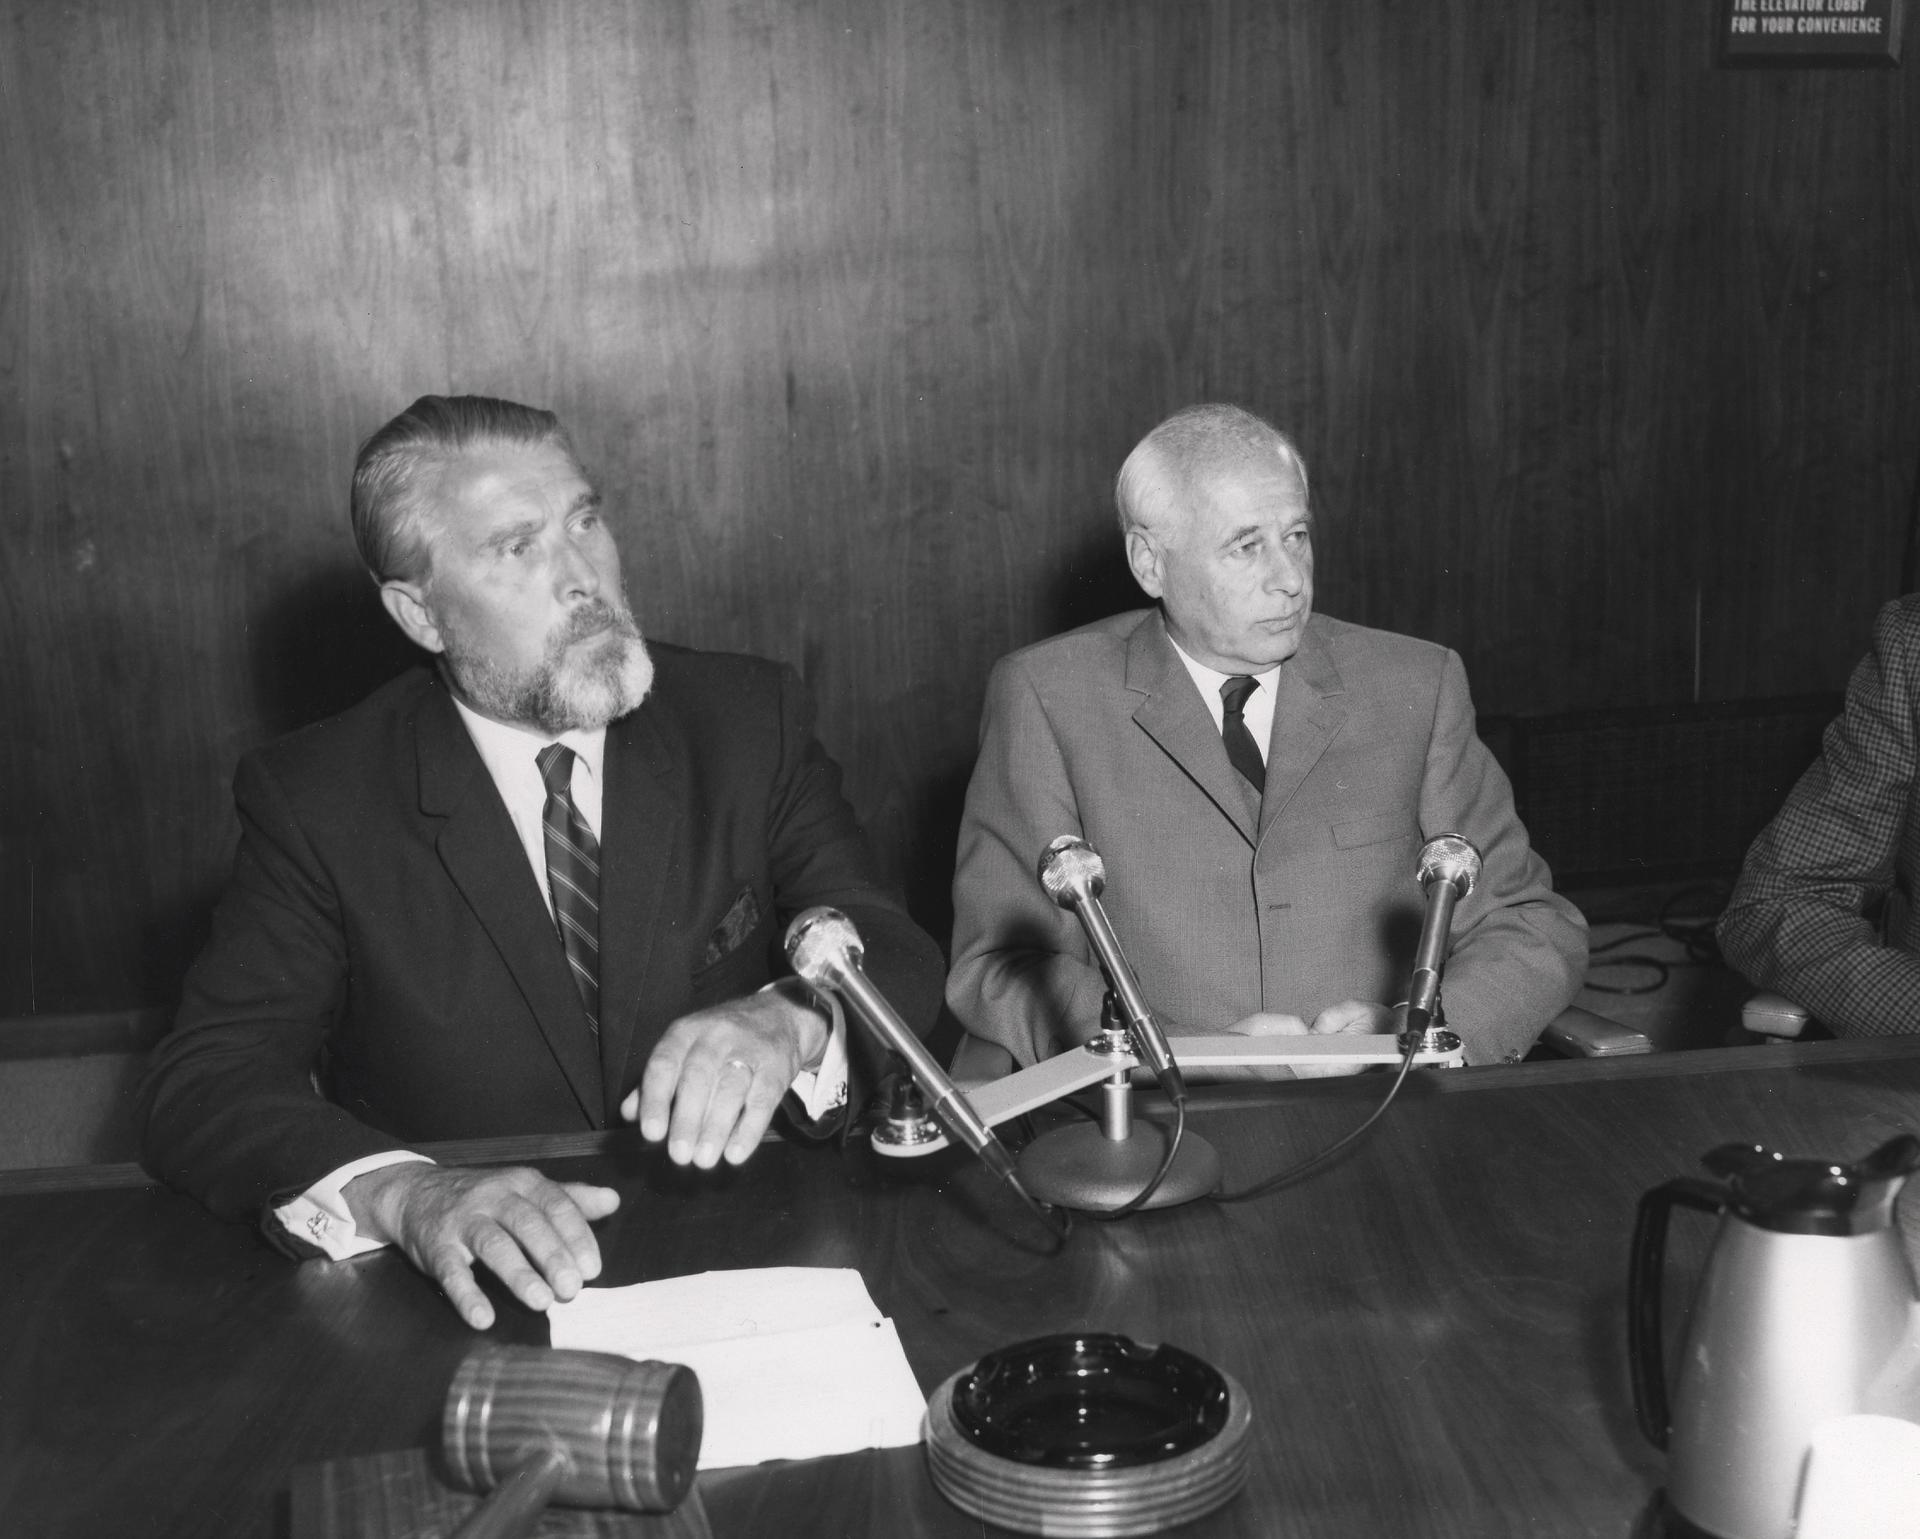 Wernher von Braun and Eberhard Rees